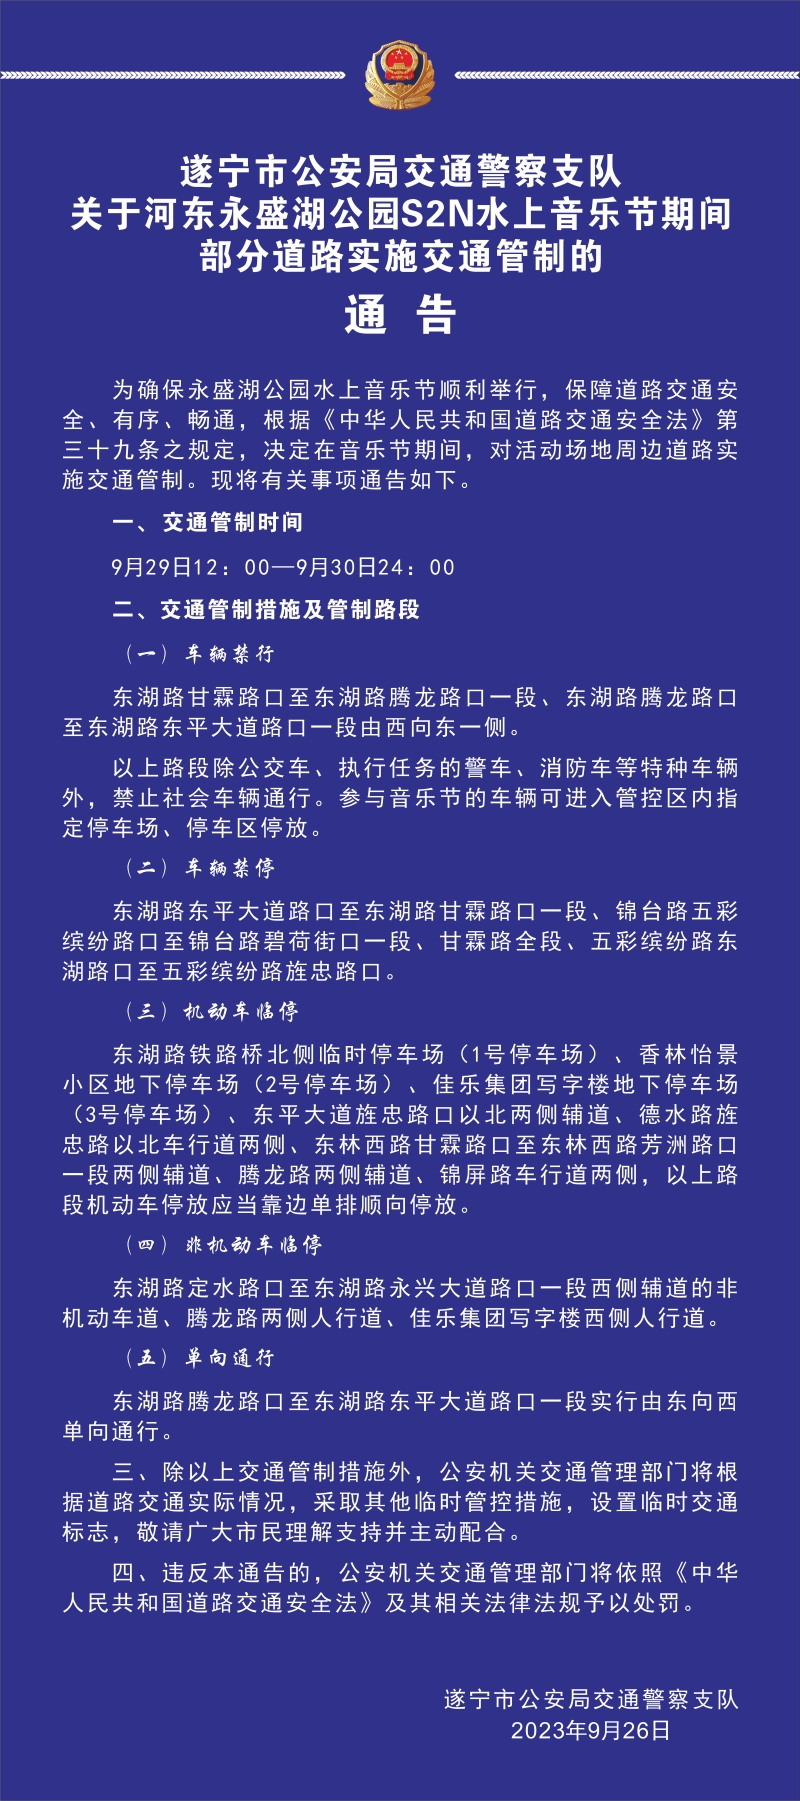 遂宁公安交警关于河东永盛湖公园S2N水上音乐节期间部分道路实施交通管制的通告